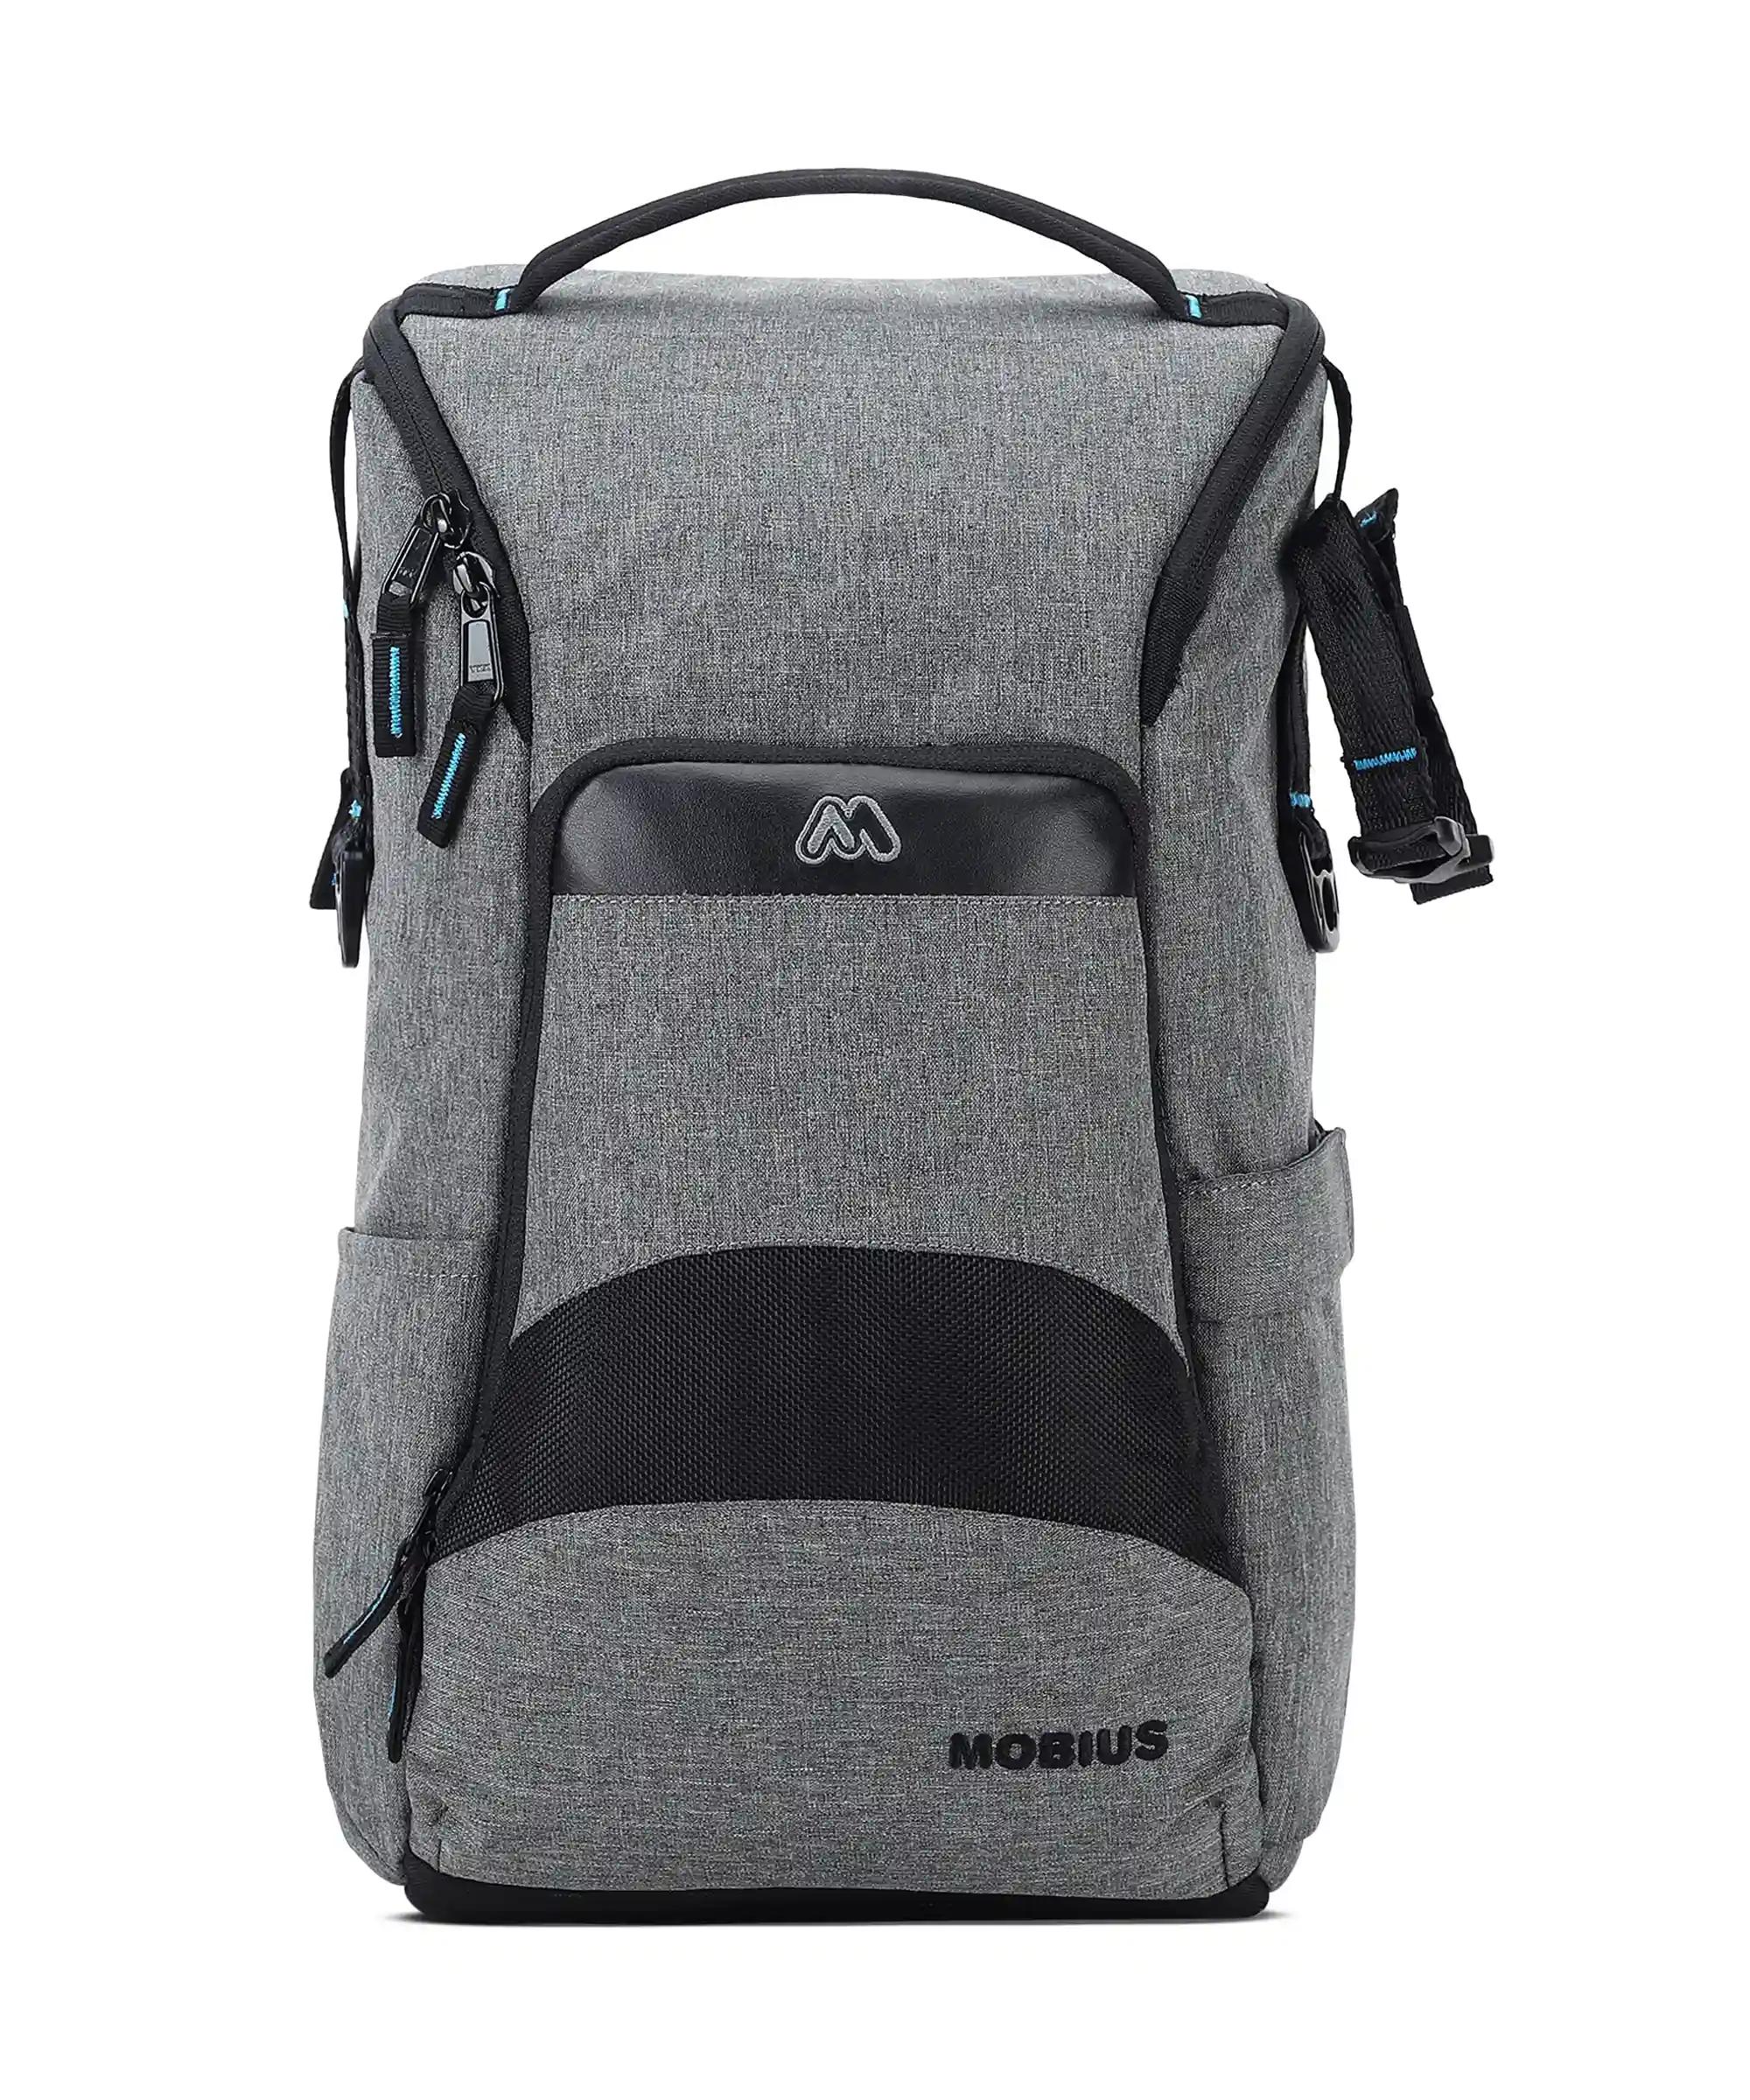 Mobius Inspire 100% Waterproof DSLR Camera Bag